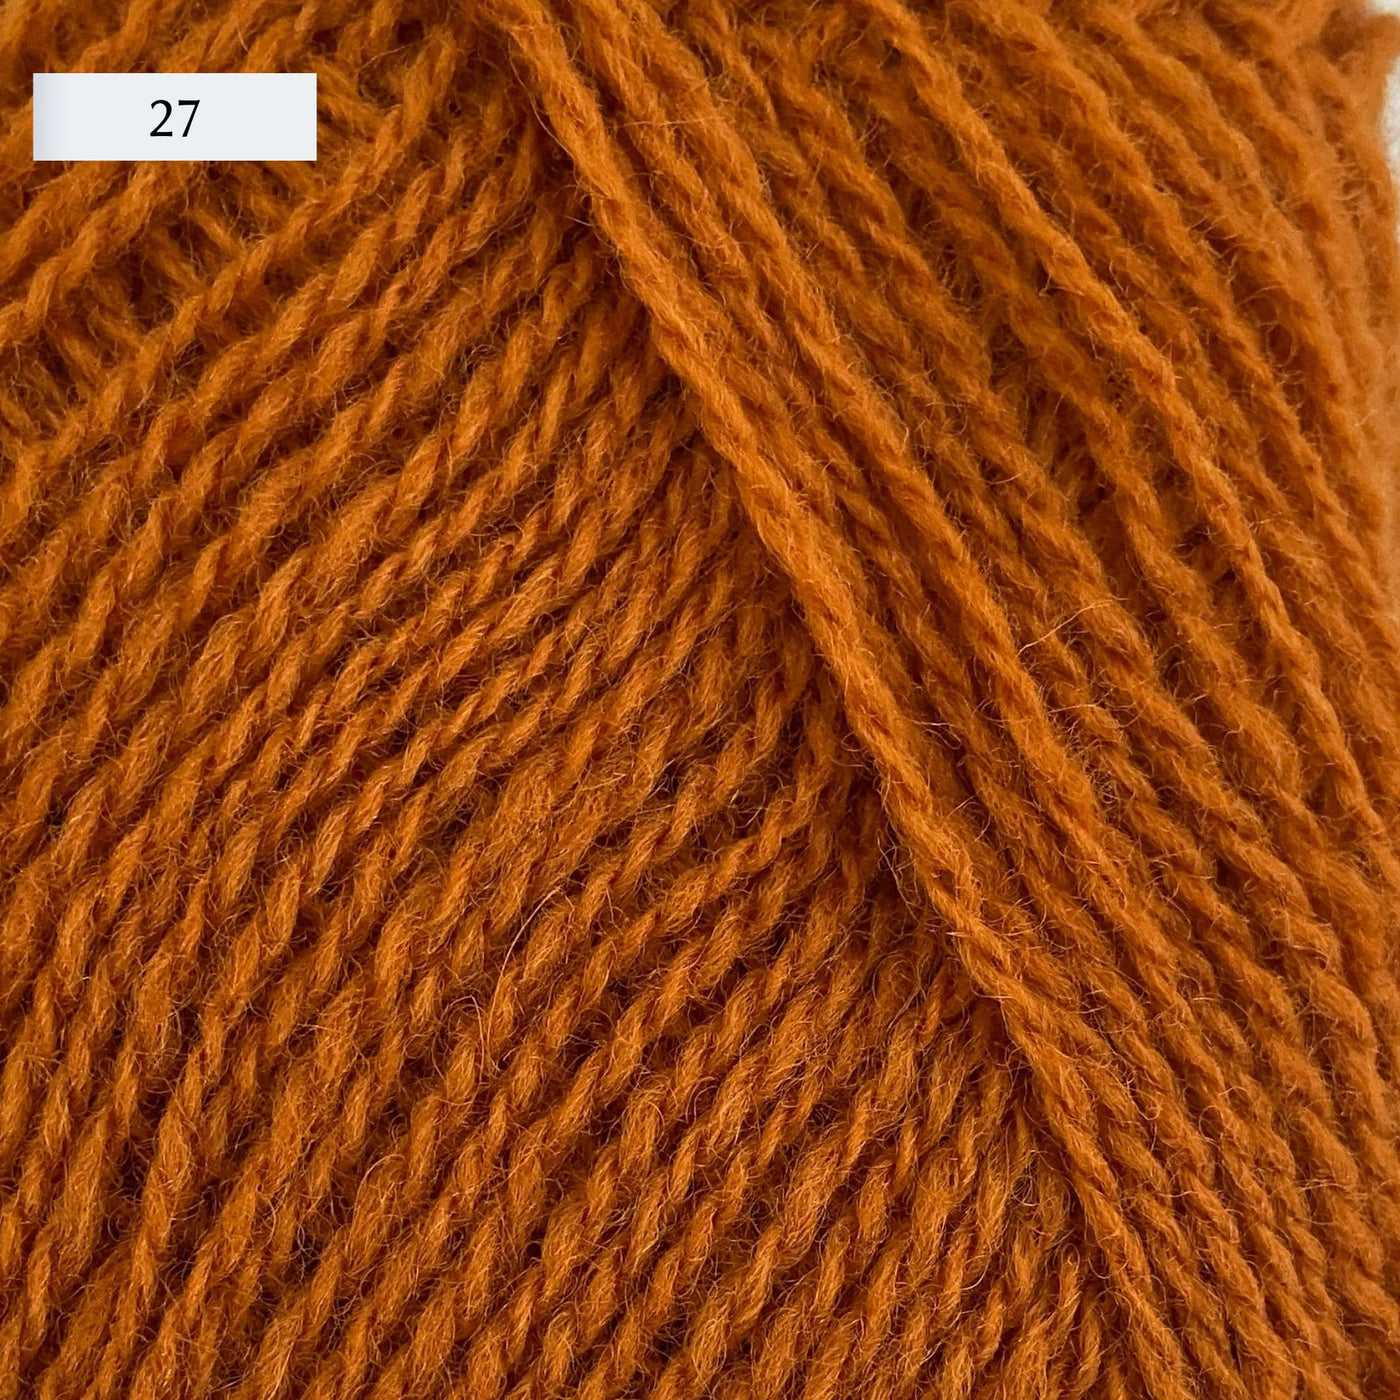 Rauma Lamullgarn, a fingering weight yarn, in color 27, a medium burnt orange